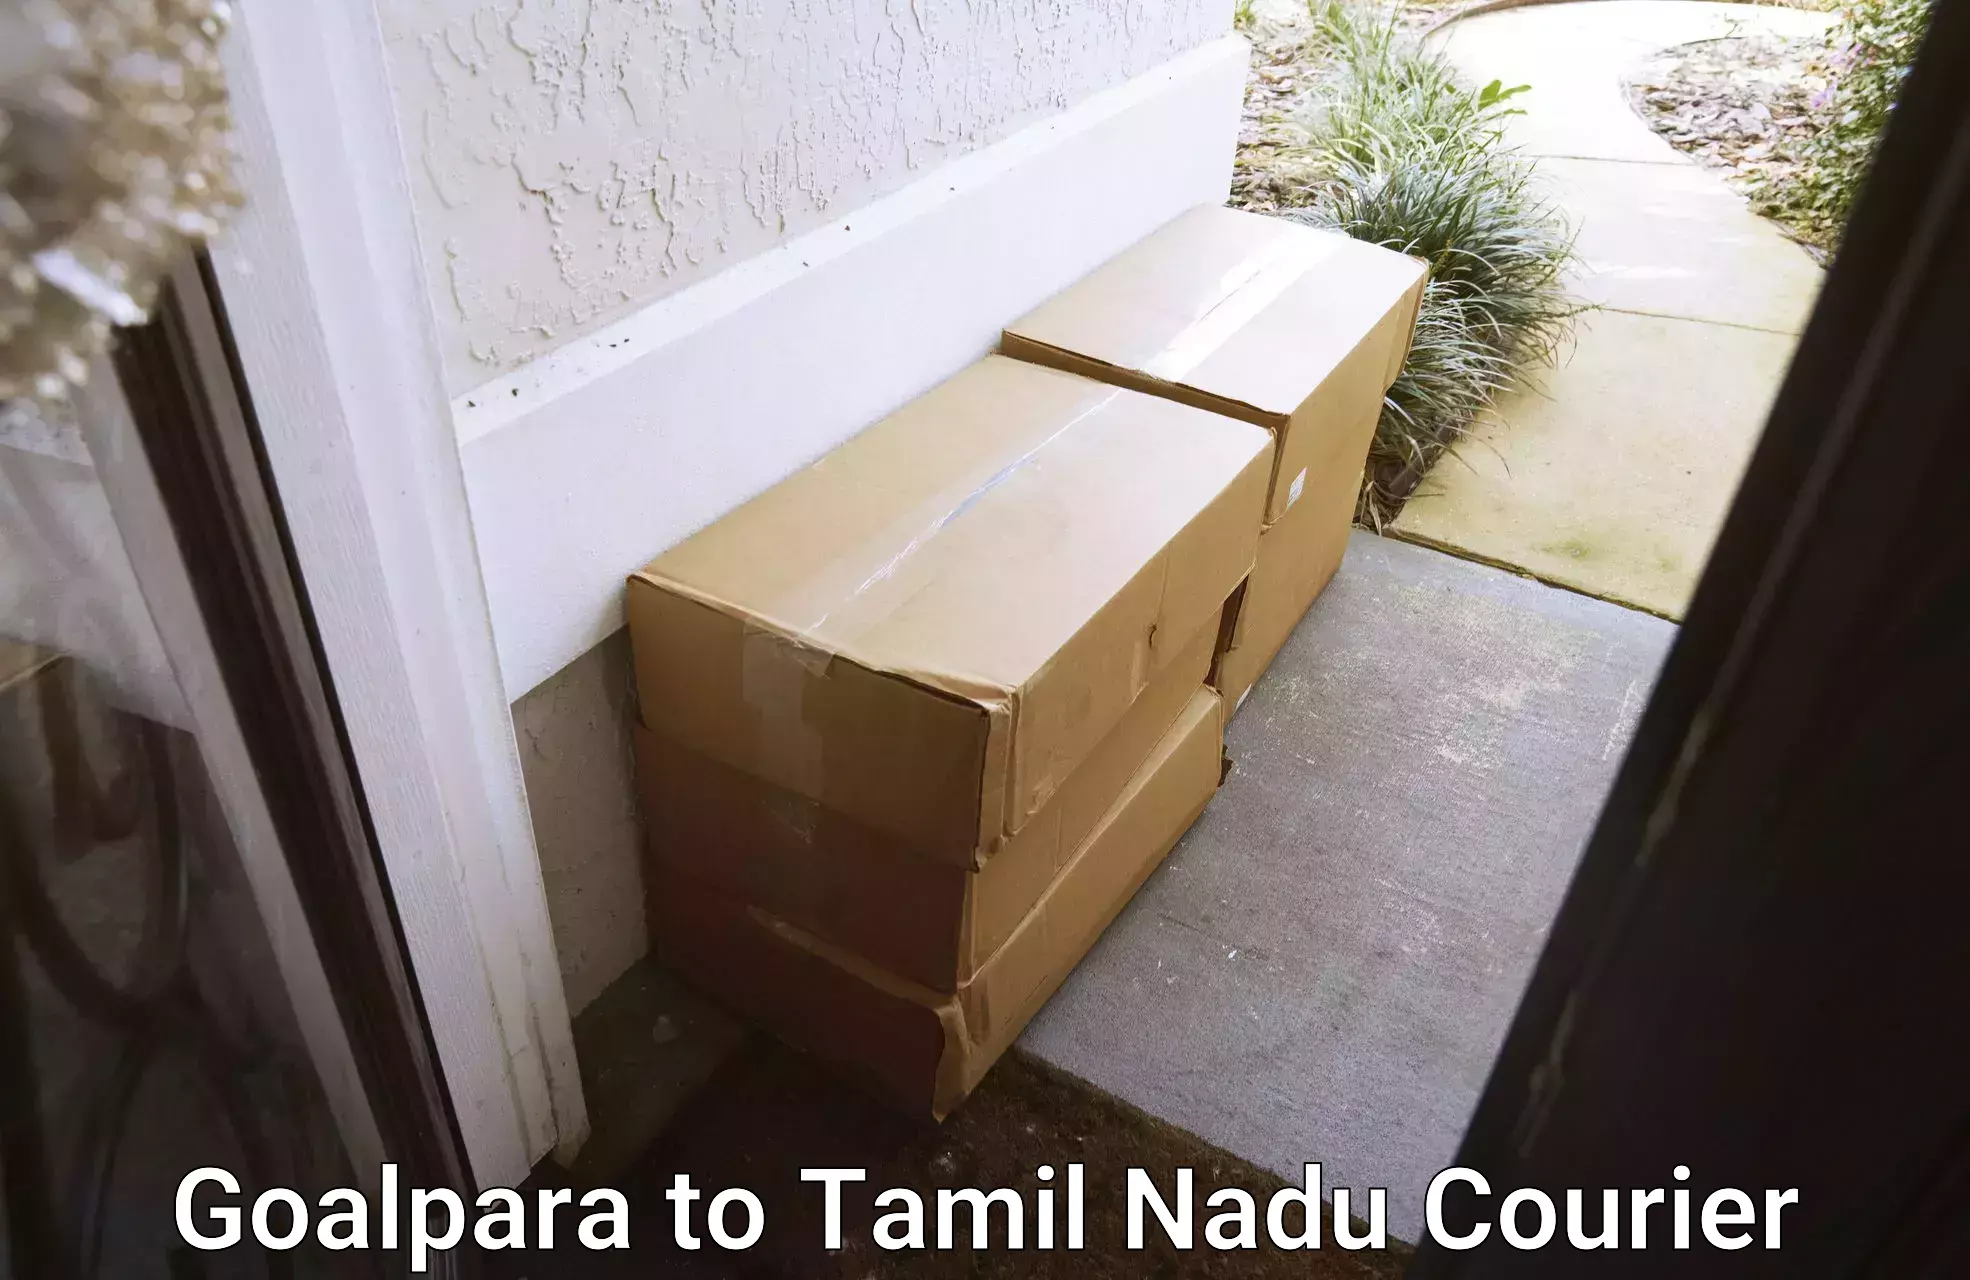 On-demand courier Goalpara to Udagamandalam